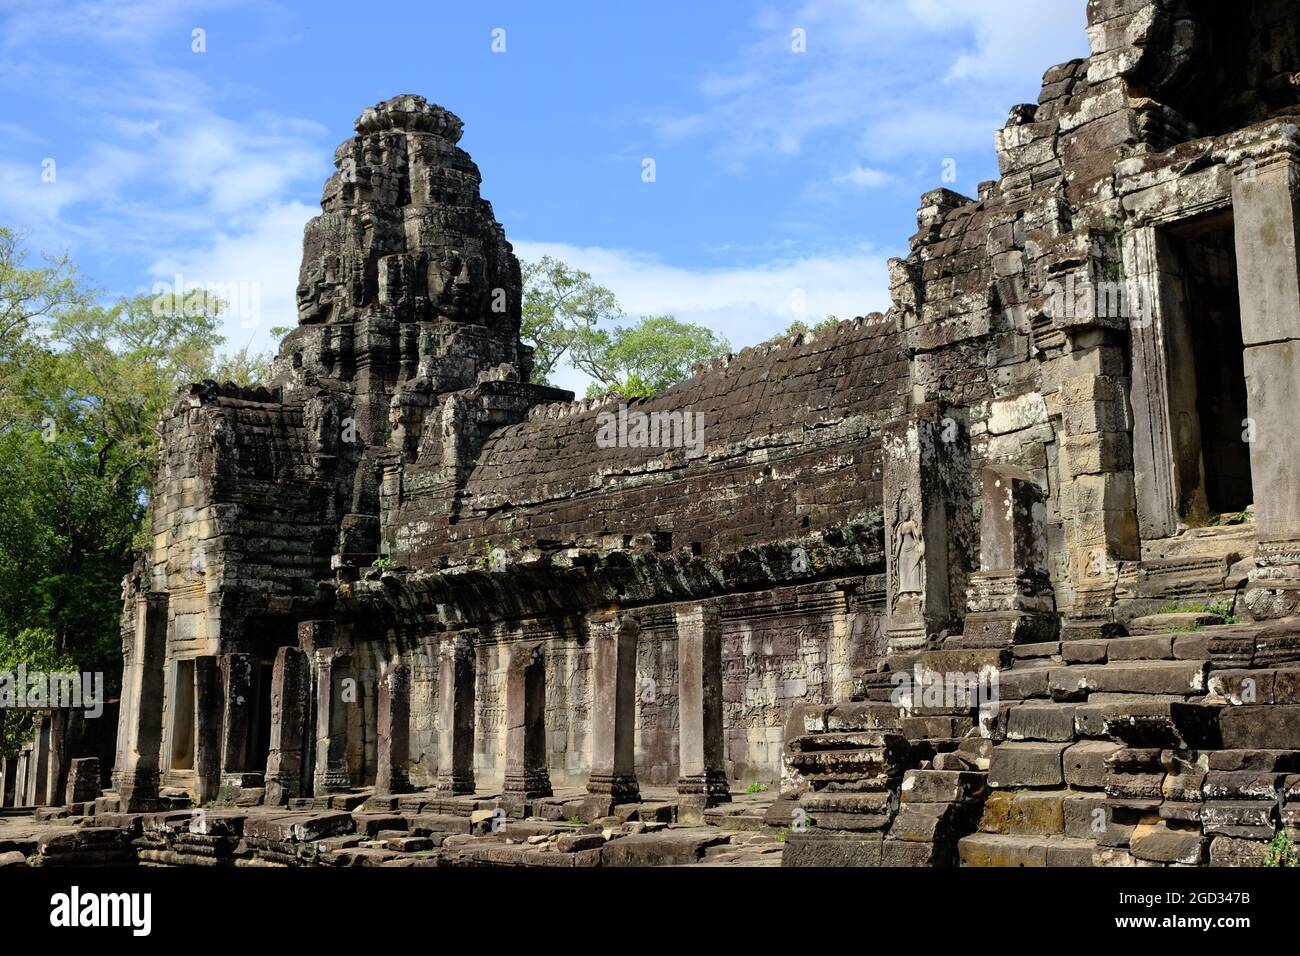 Kambodscha Krong Siem Reap Angkor Wat - Bayon Temple Fassade mit geschnitzten Gesichtern Stockfoto